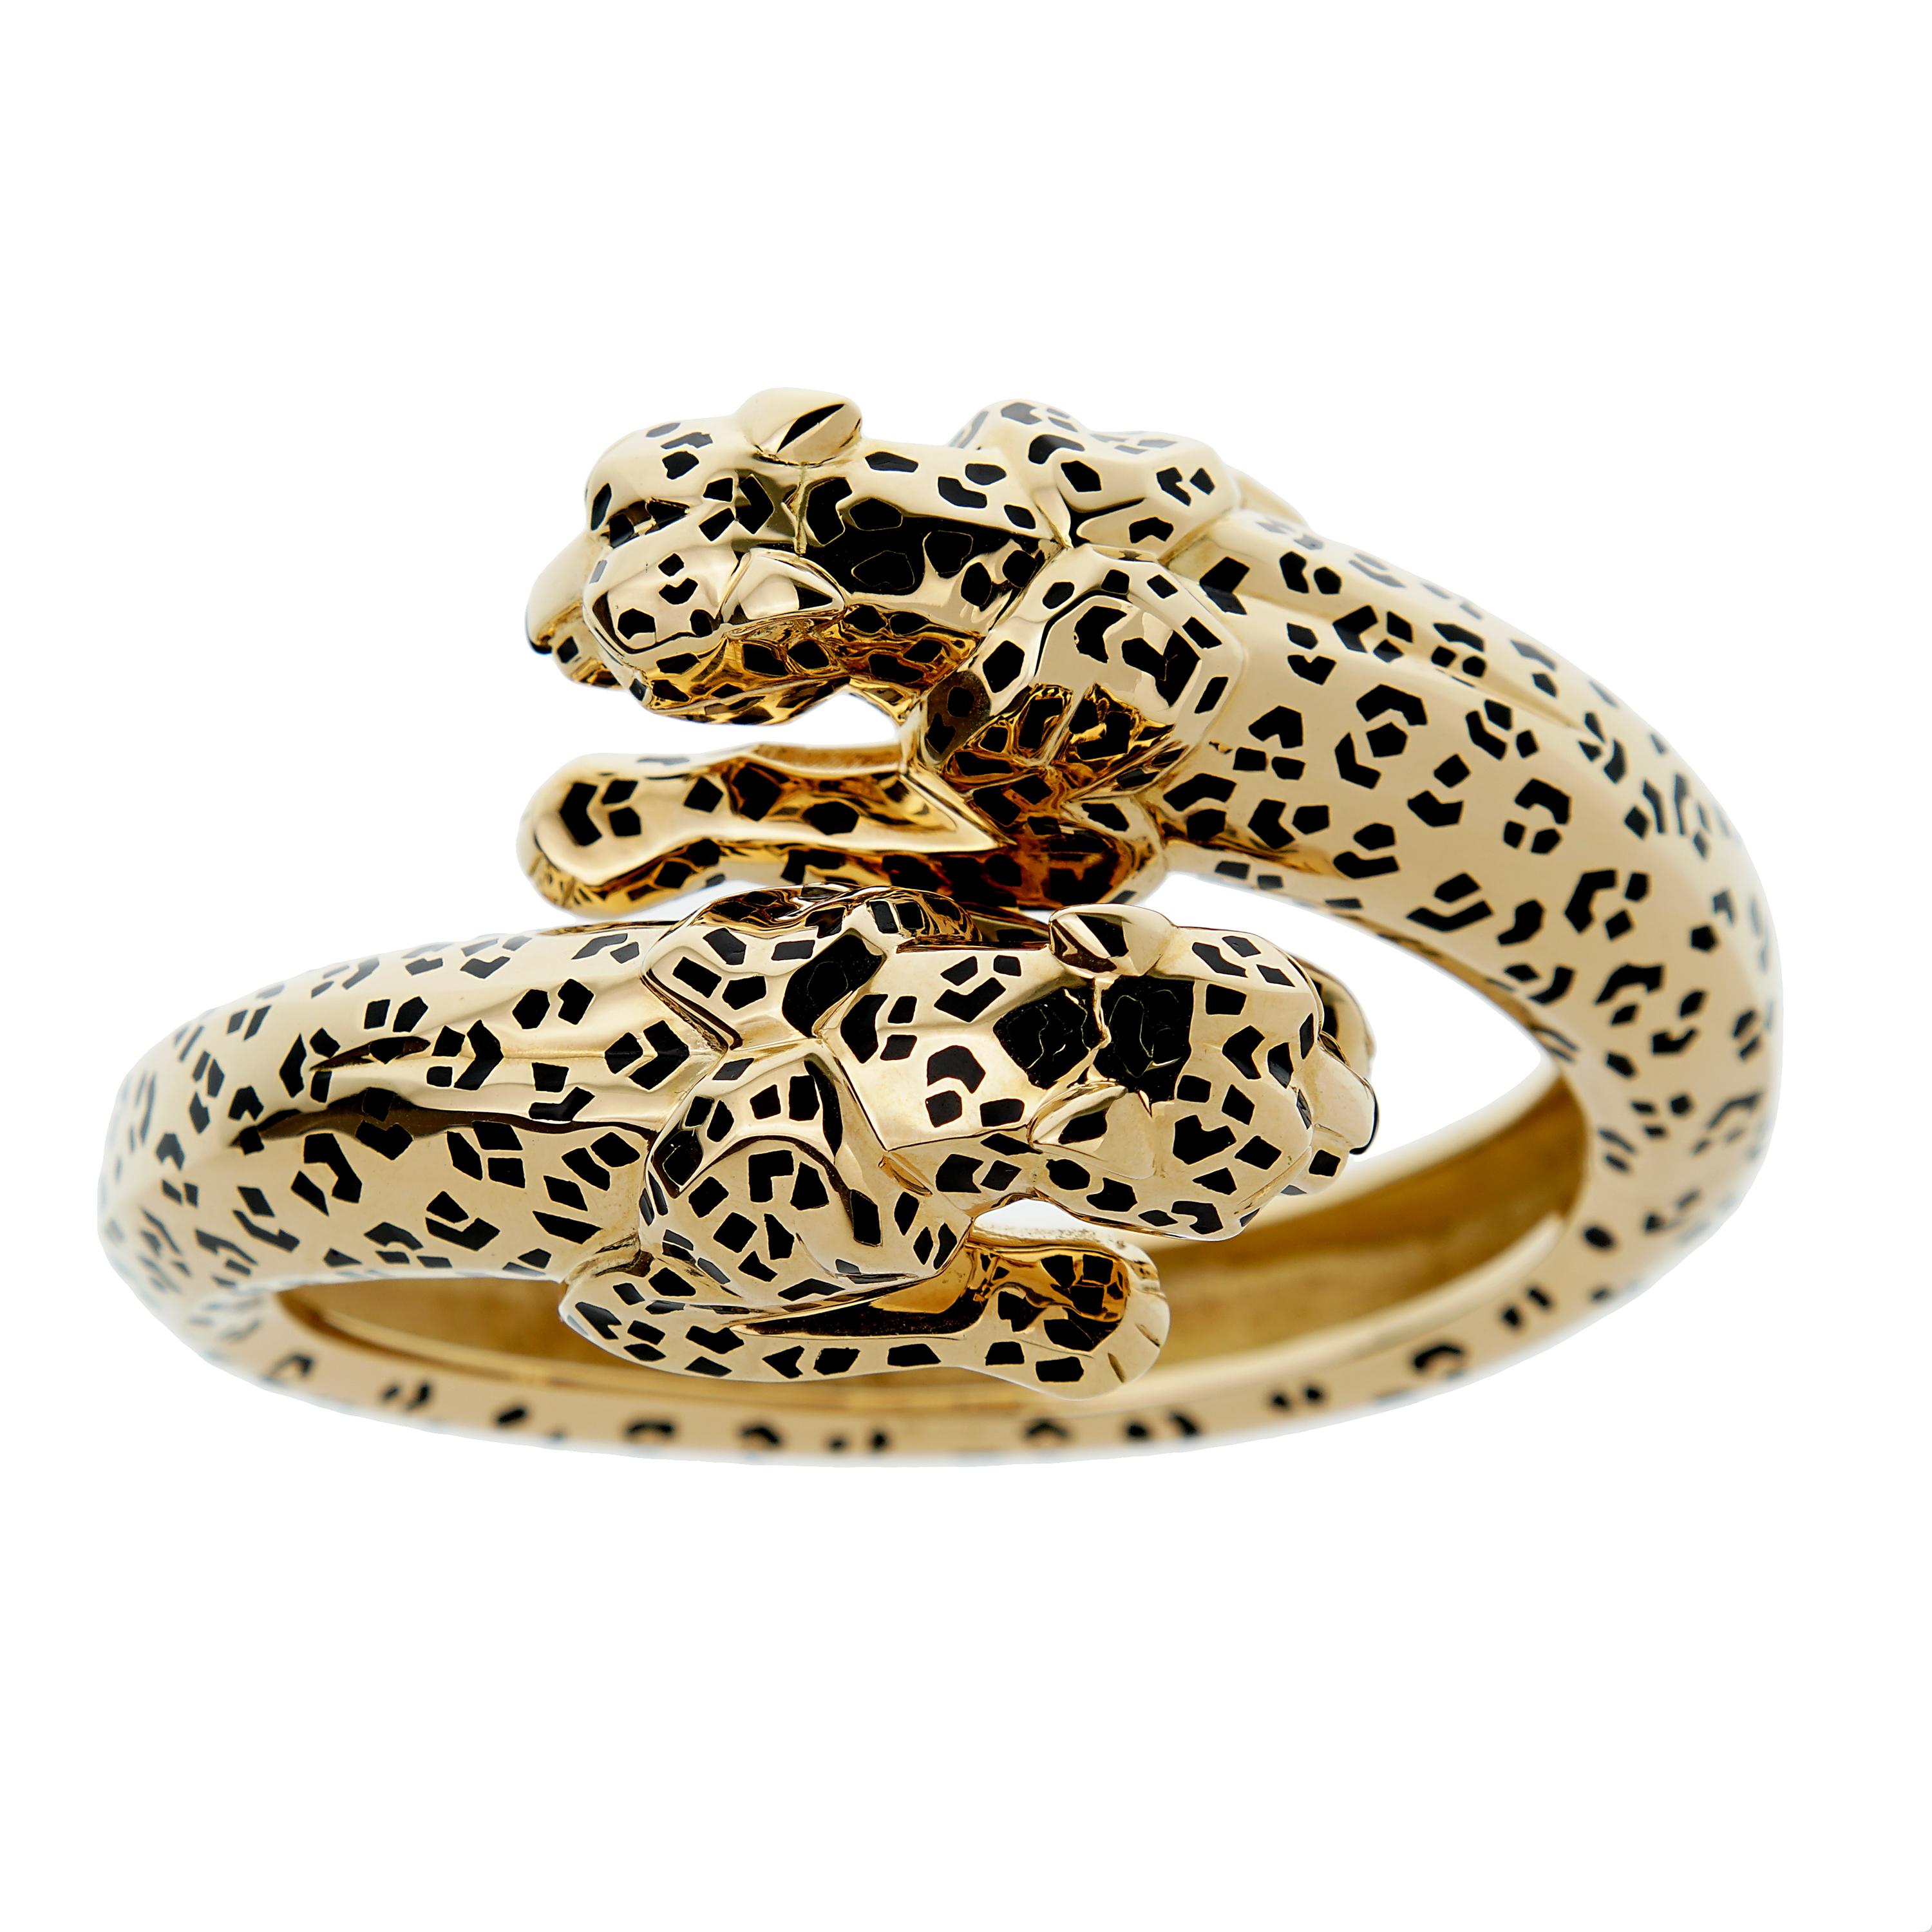 Le bracelet Panthère en or jaune de Cartier est un bijou exquis qui n'est pas un simple accessoire, mais une déclaration. Fabriqué avec minutie par les maîtres artisans de Cartier, ce bracelet est un mélange harmonieux de haute couture et de